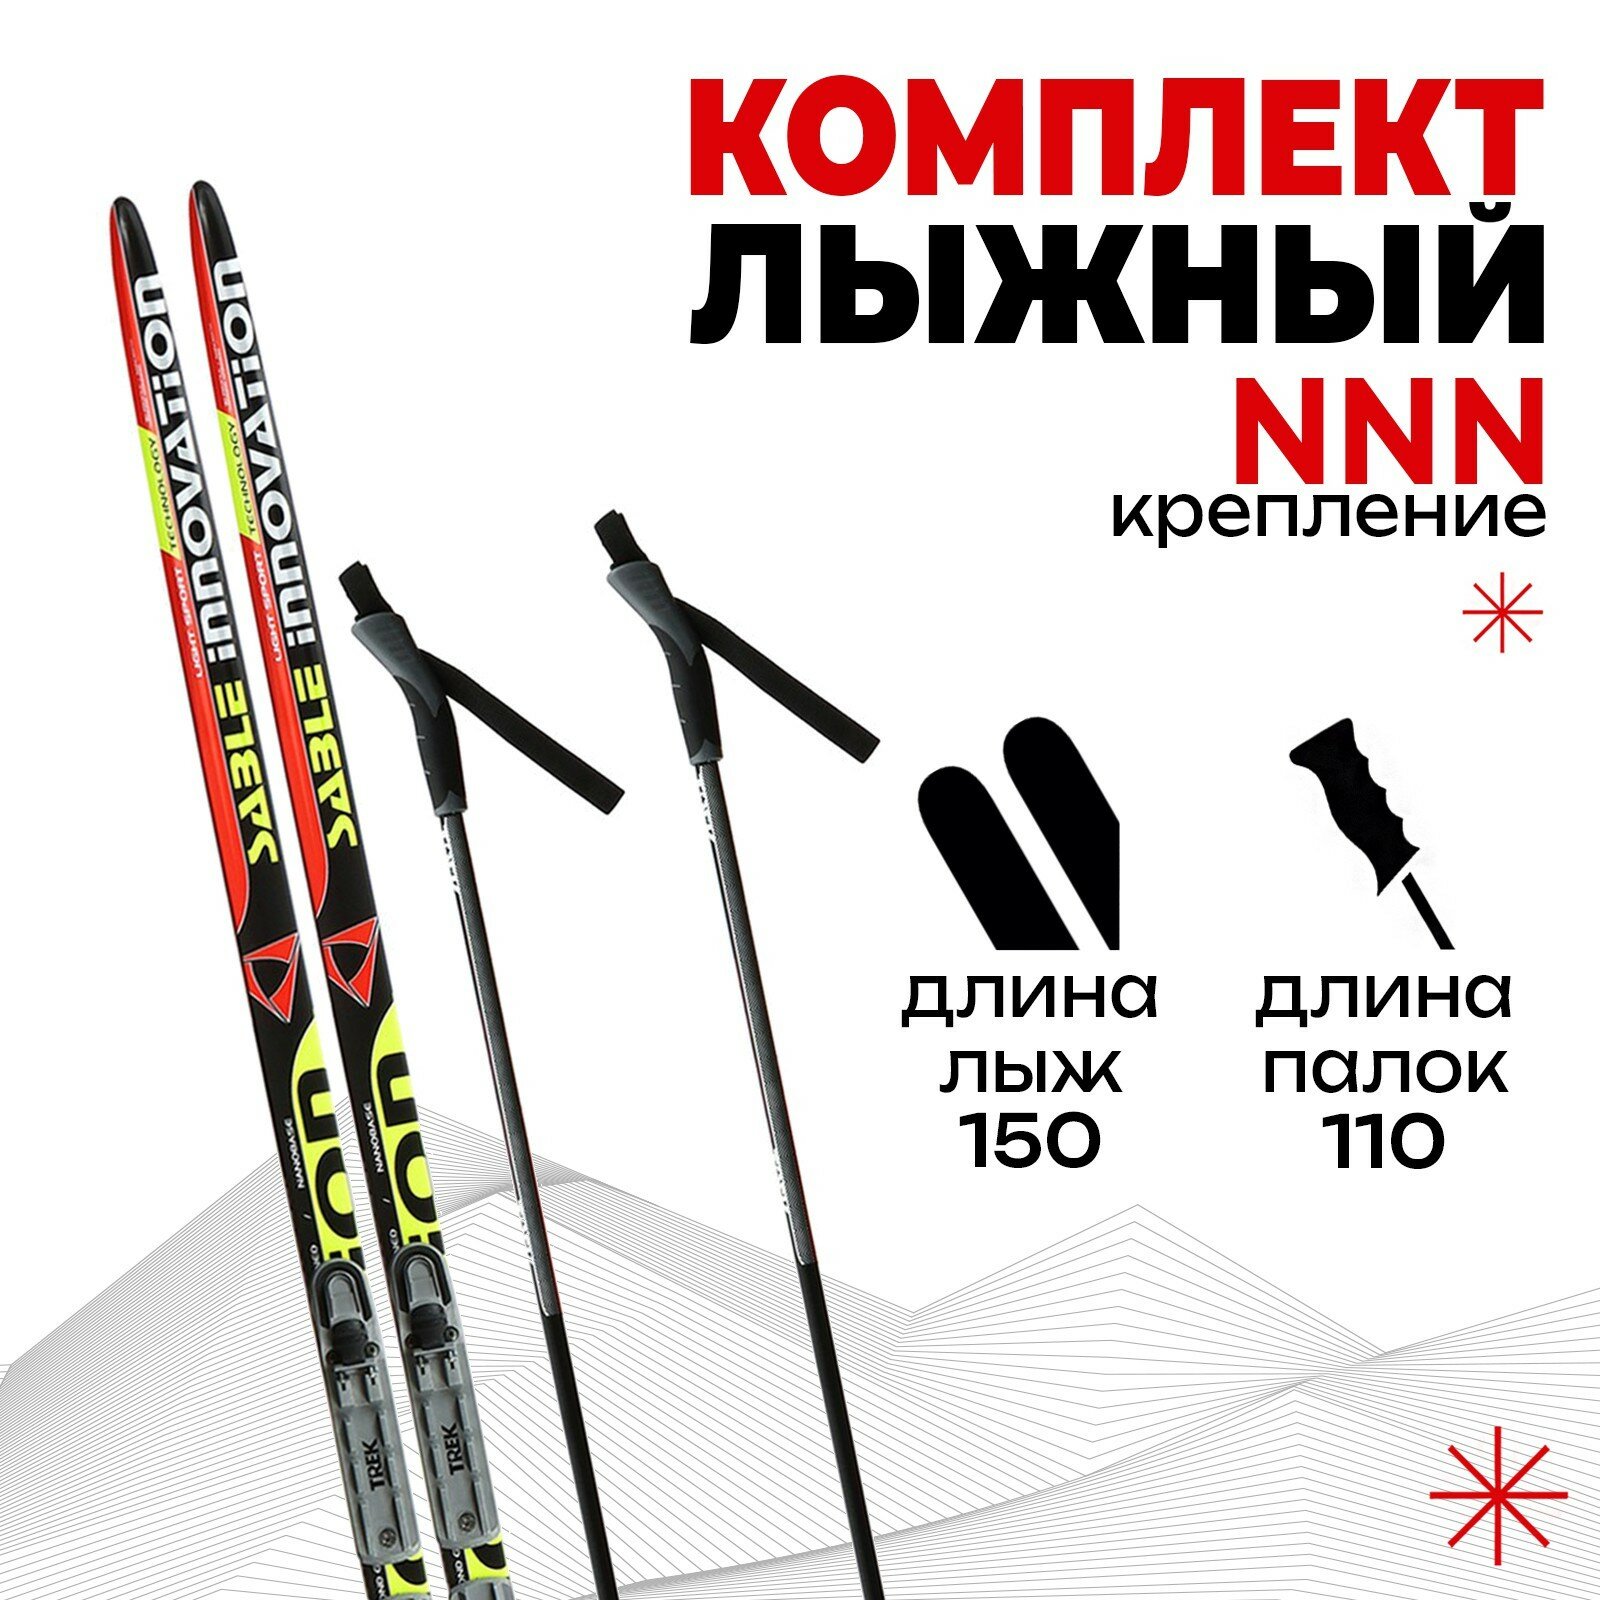 Комплект лыжный: пластиковые лыжи 150 см без насечек стеклопластиковые палки 110 см крепления NNN цвета микс